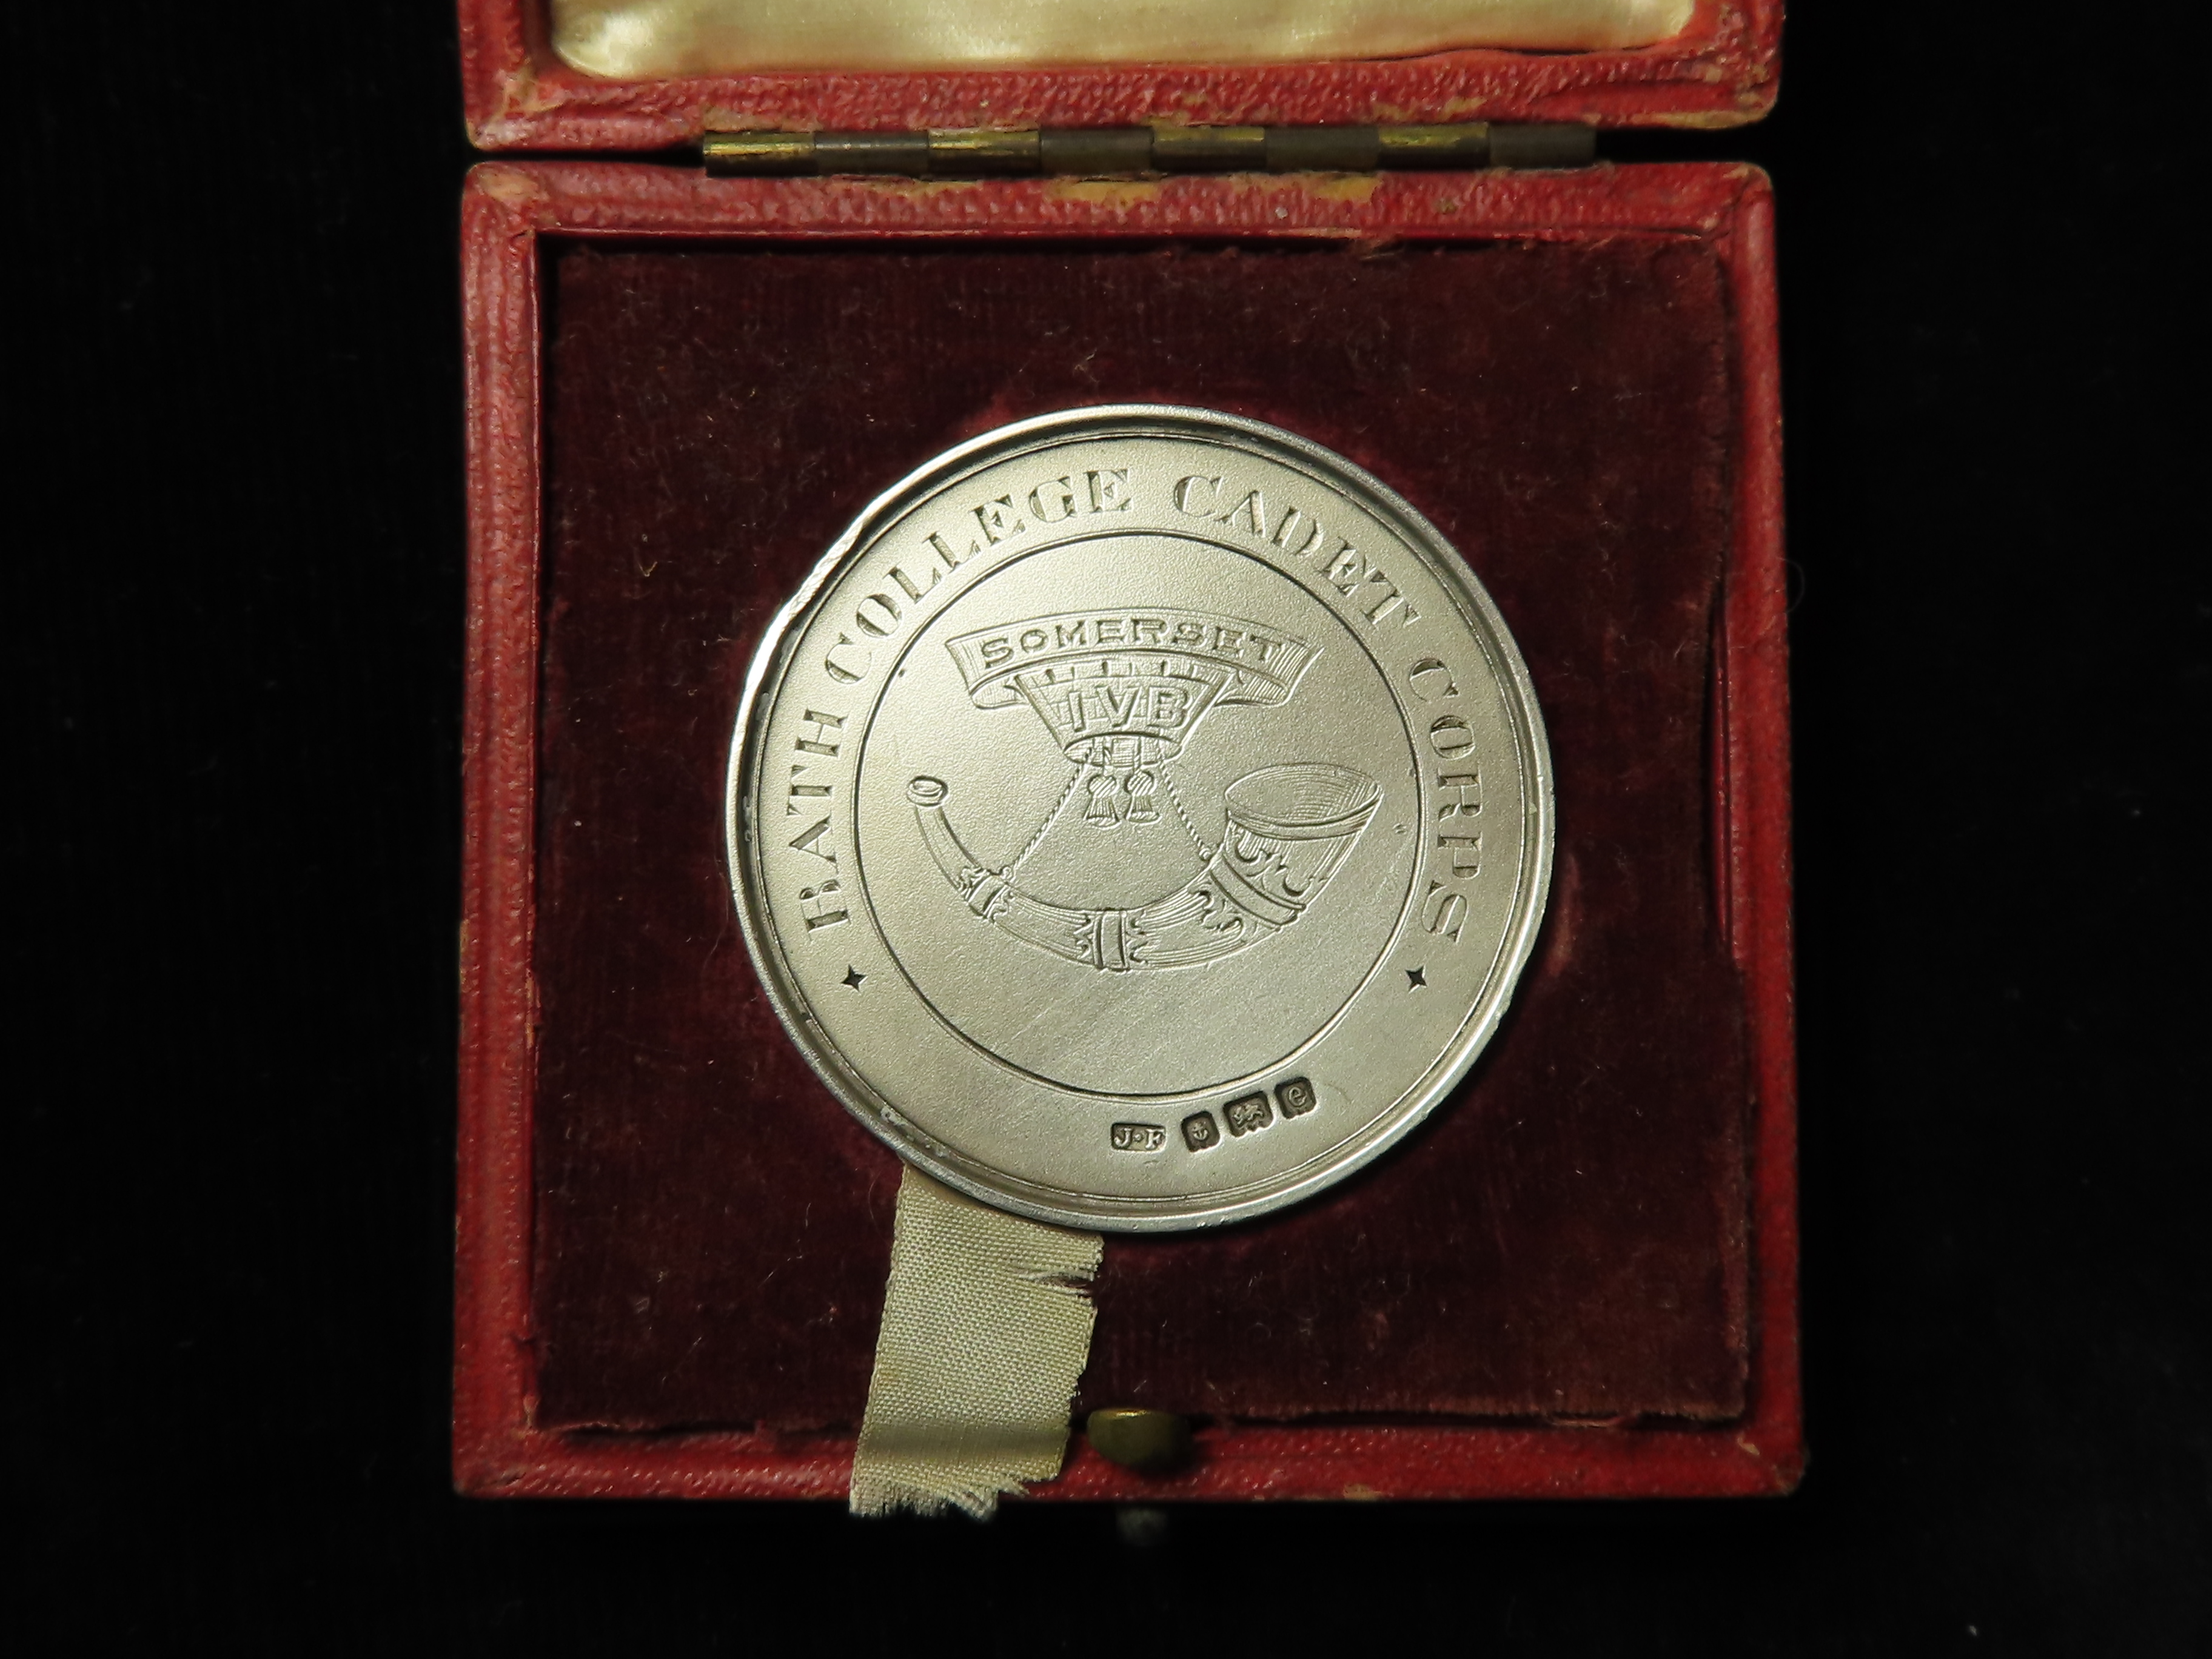 Bath College Cadet Corps IV Batt. Somerset Light Infantry silver shooting medal to Cadet H/L/ Milsom - Image 2 of 2